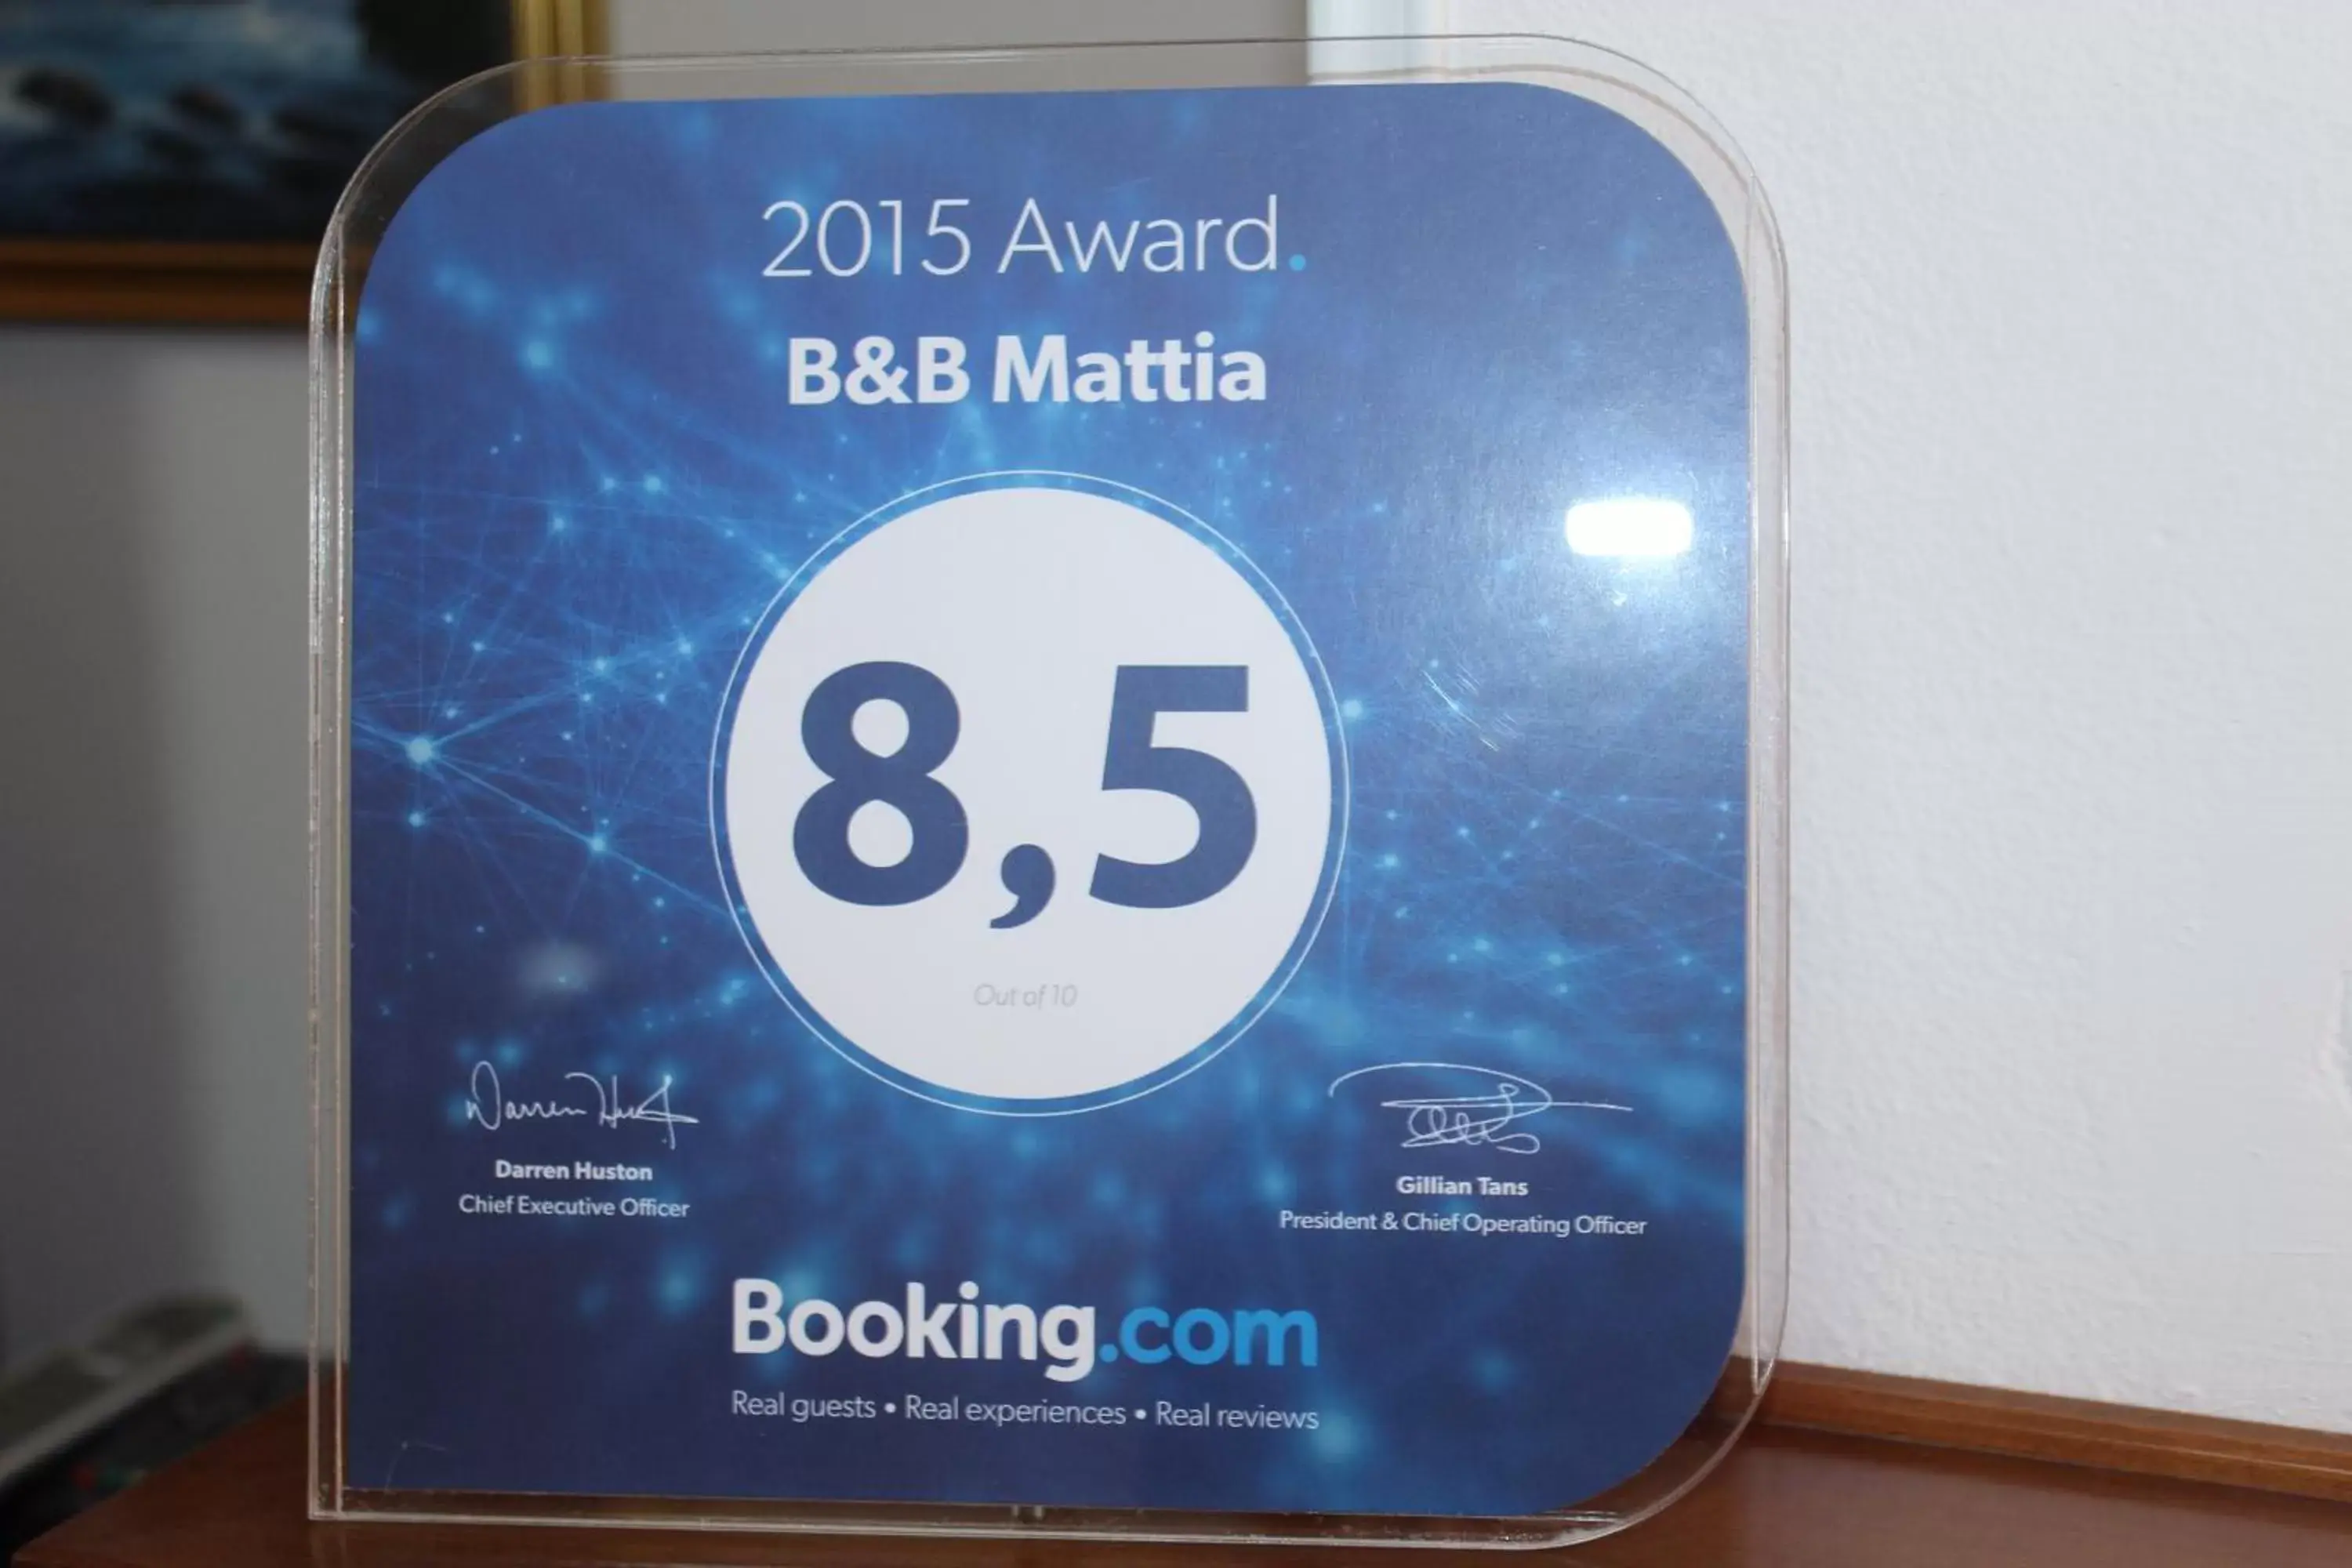 Certificate/Award in B&B Mattia